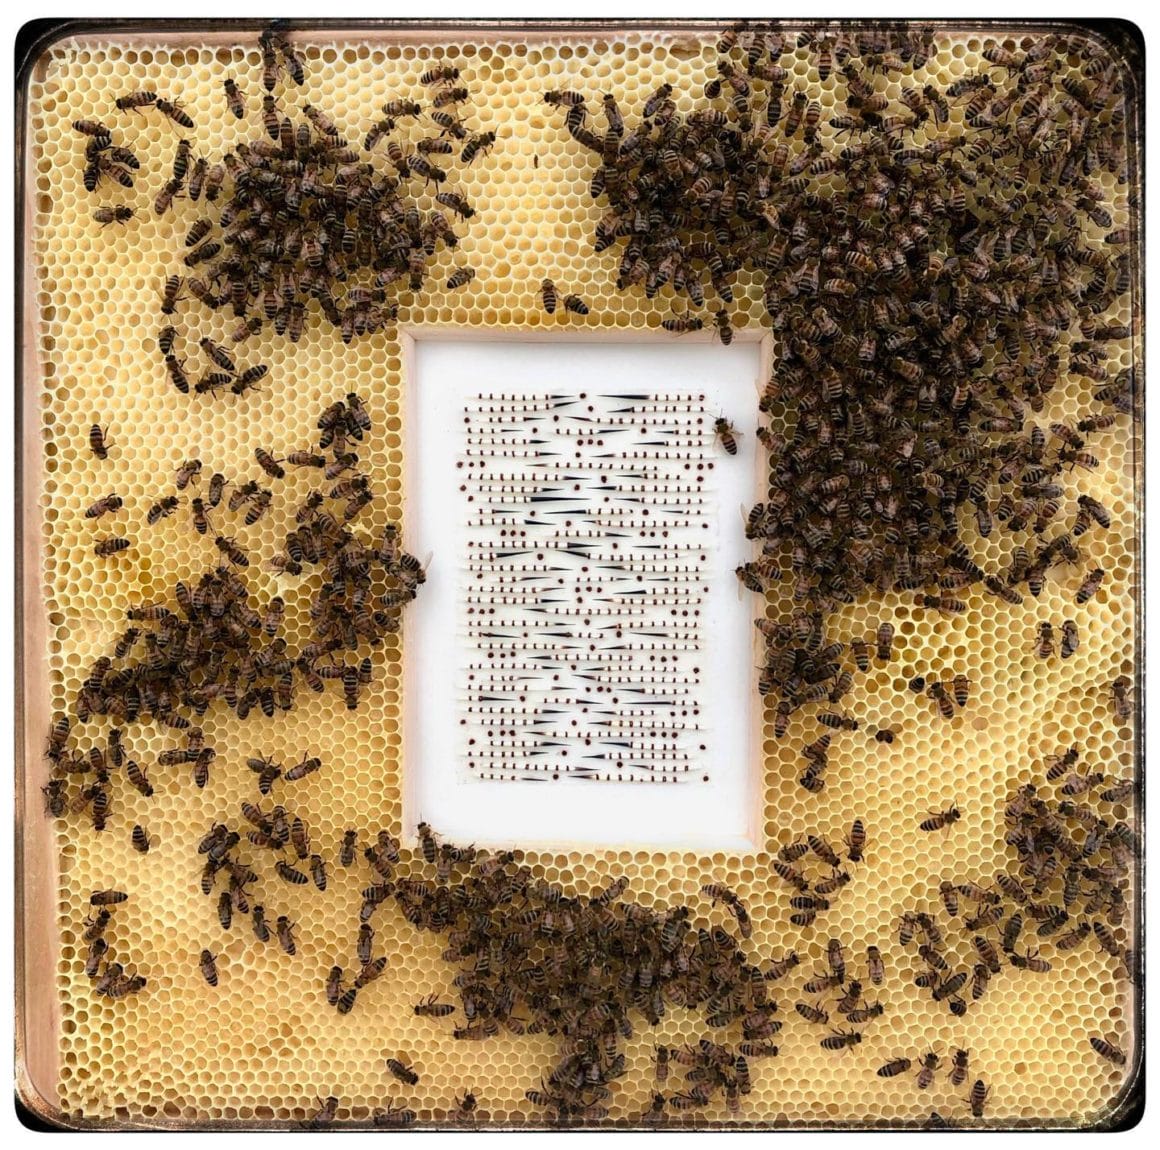 Cadre en bois avec des épines de porc-épic cousus sur du papier japonais. L'oeuvre est disposé dans une véritable ruche entourée d'abeilles.